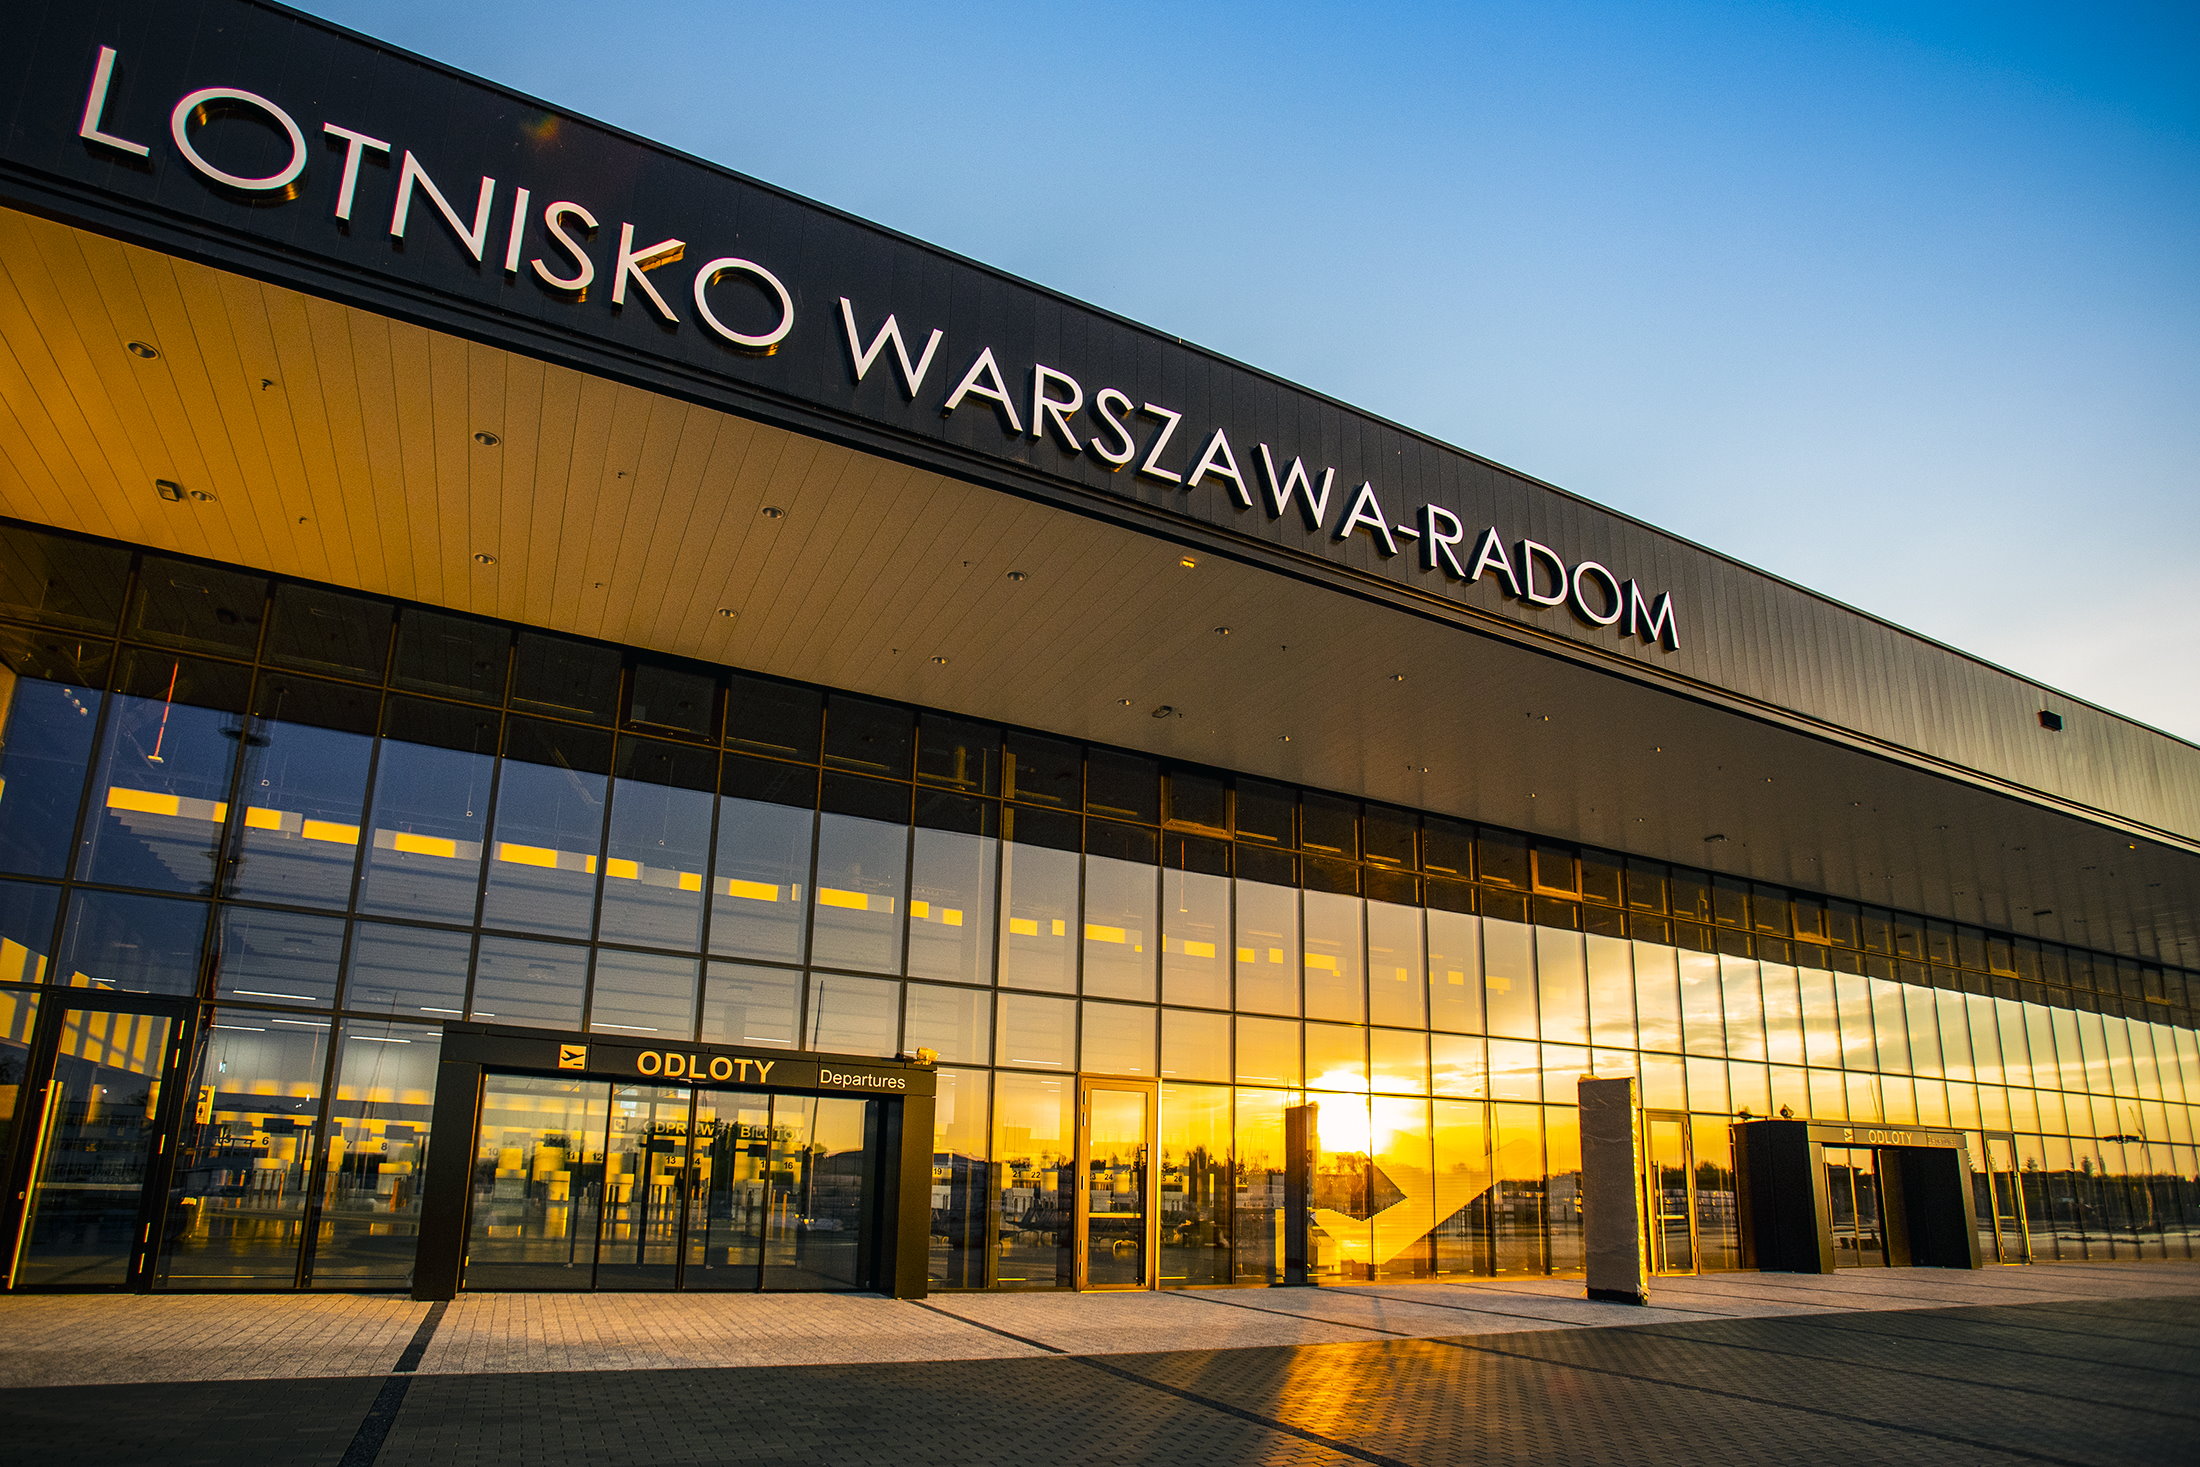 Lotnisko Warszawa – Radom: trzy nowe połączenia PLL LOT